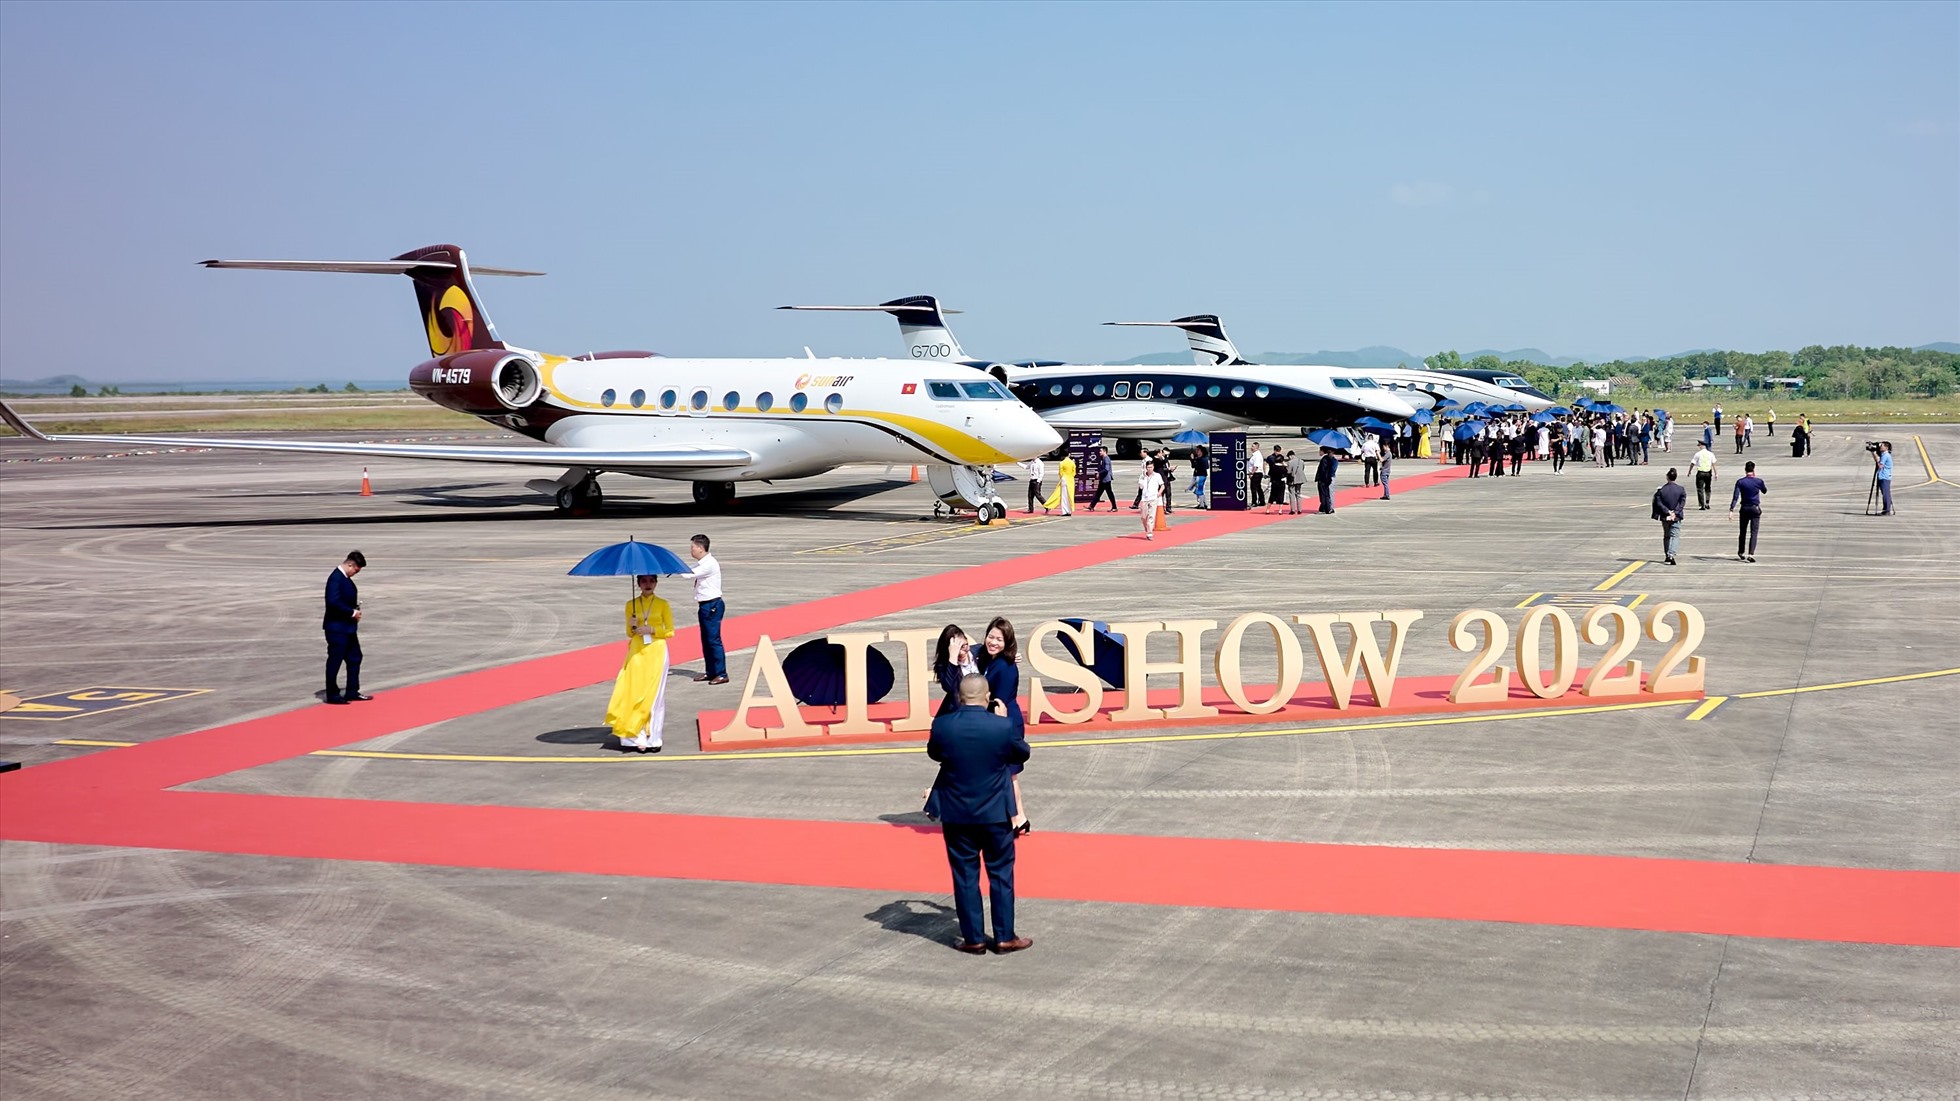 Triển lãm hàng không Airshow 2022 được coi là sự kiện có ý nghĩa đặc biệt trong lĩnh vực hàng không chung nói riêng và hàng không Việt Nam nói chung, bởi đây là lần hiếm hoi hãng máy bay danh tiếng Gulfstream tổ chức triển lãm máy bay riêng ngoài quy mô các triển lãm hàng không thông thường.